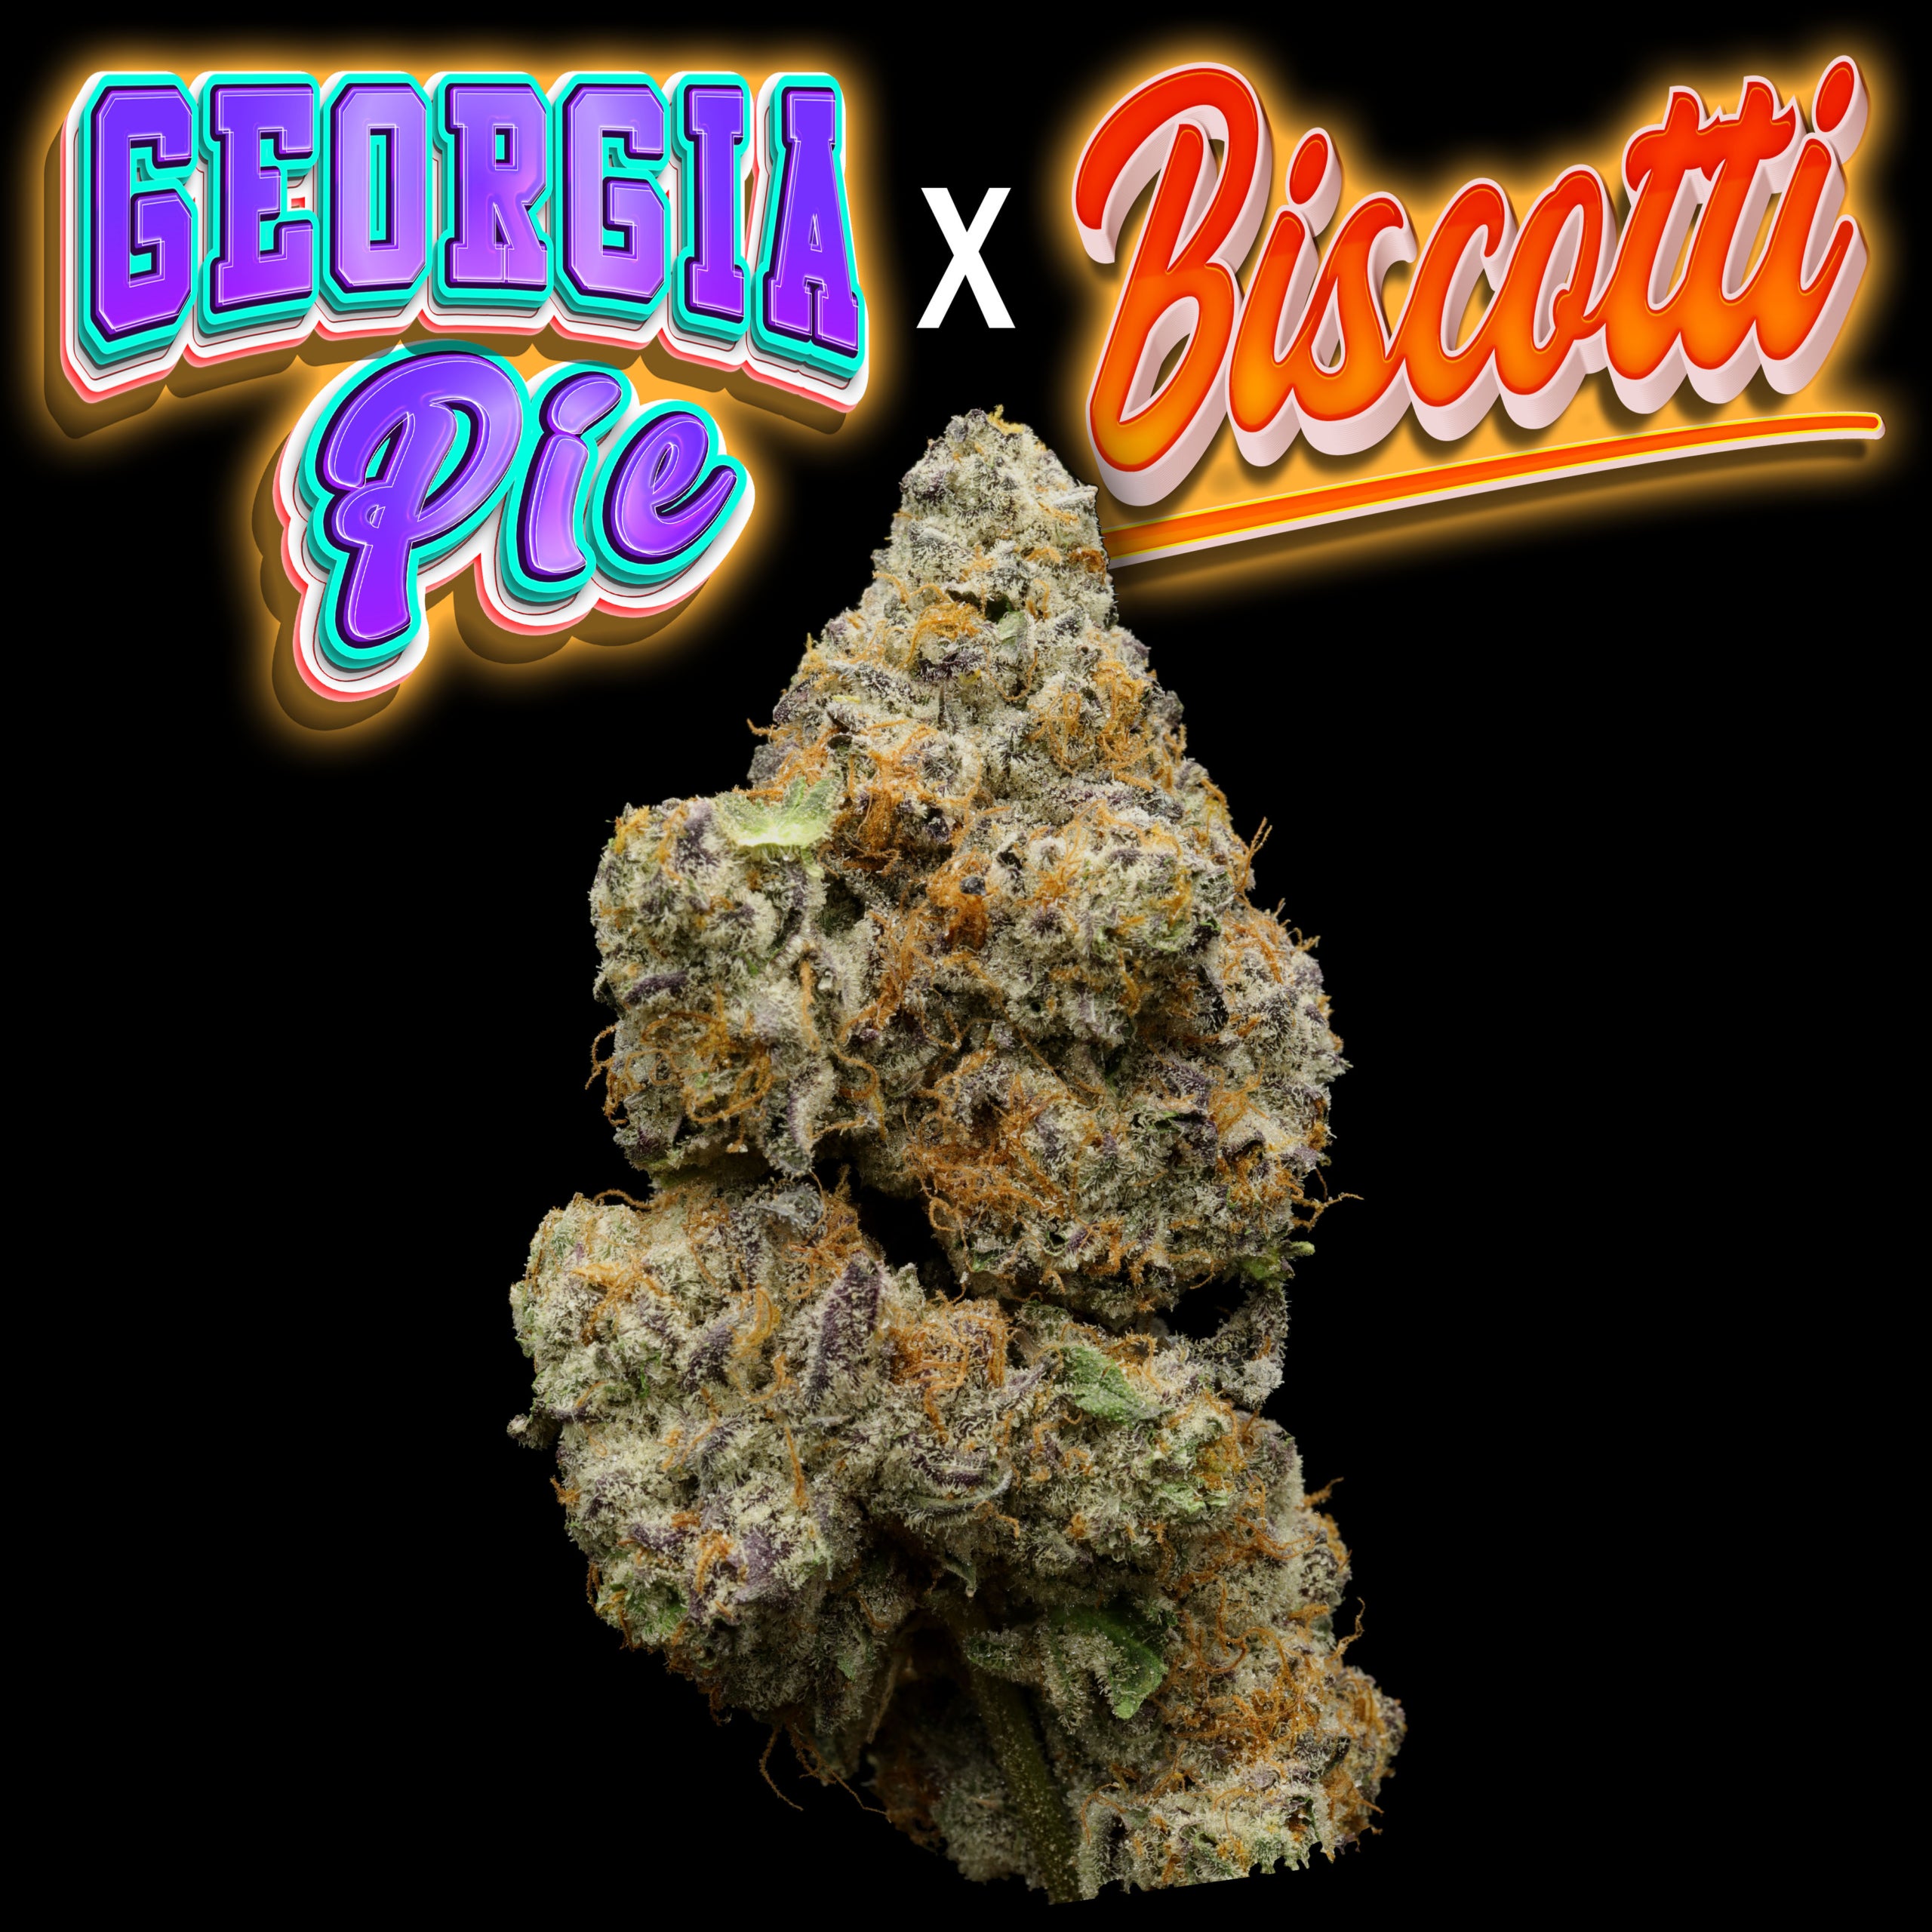 Georgia Pie x Biscotti Thumbnail